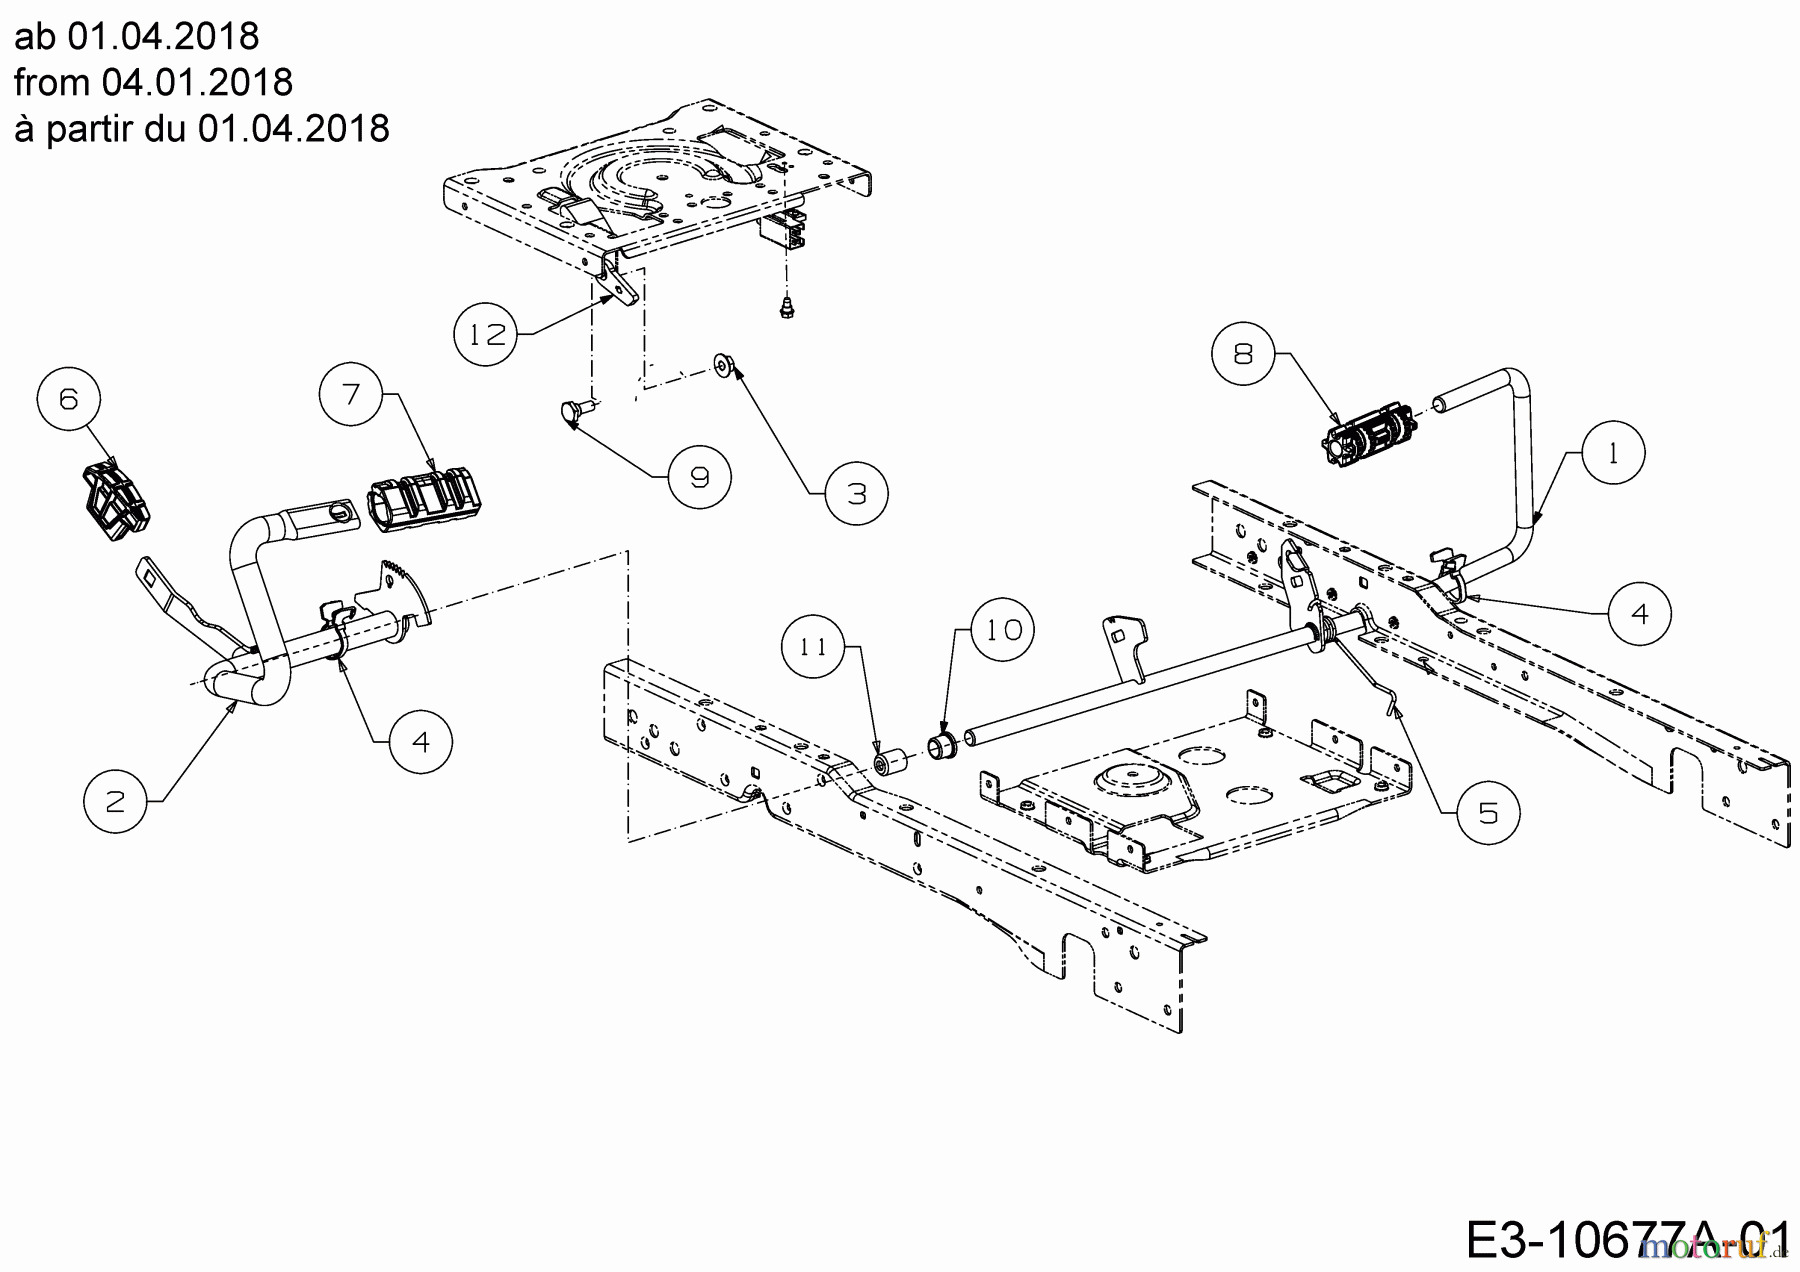  Cub Cadet Lawn tractors XT2 PS117 13AGA1CT603  (2020) Pedals from 04.01.2018